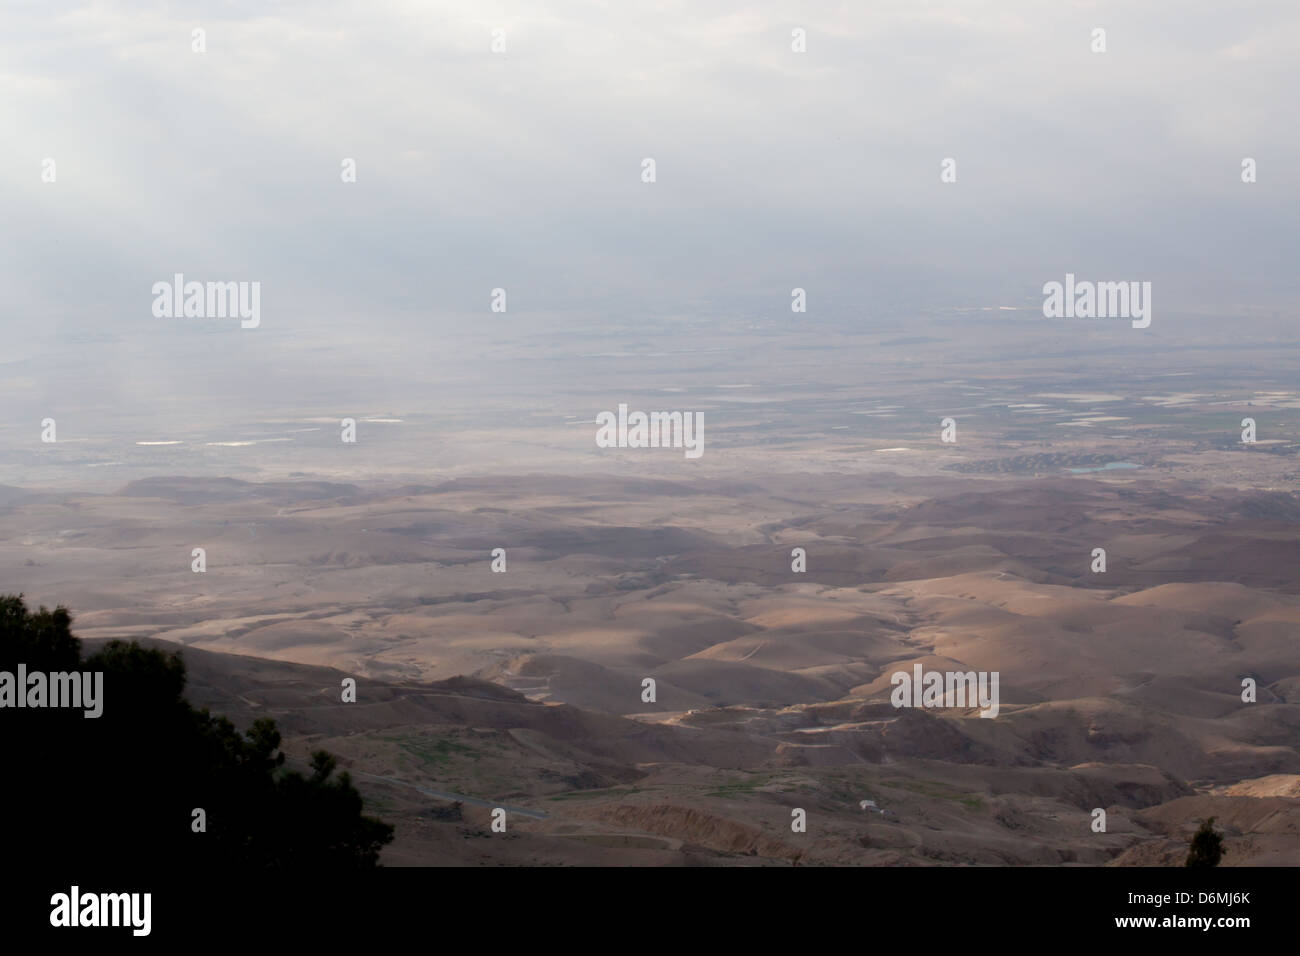 Israël, ou la terre promise, vu de Mt. Nebo en Jordanie. C'est ce que Moïse aurait pu voir de ce qui devait être Israël Banque D'Images